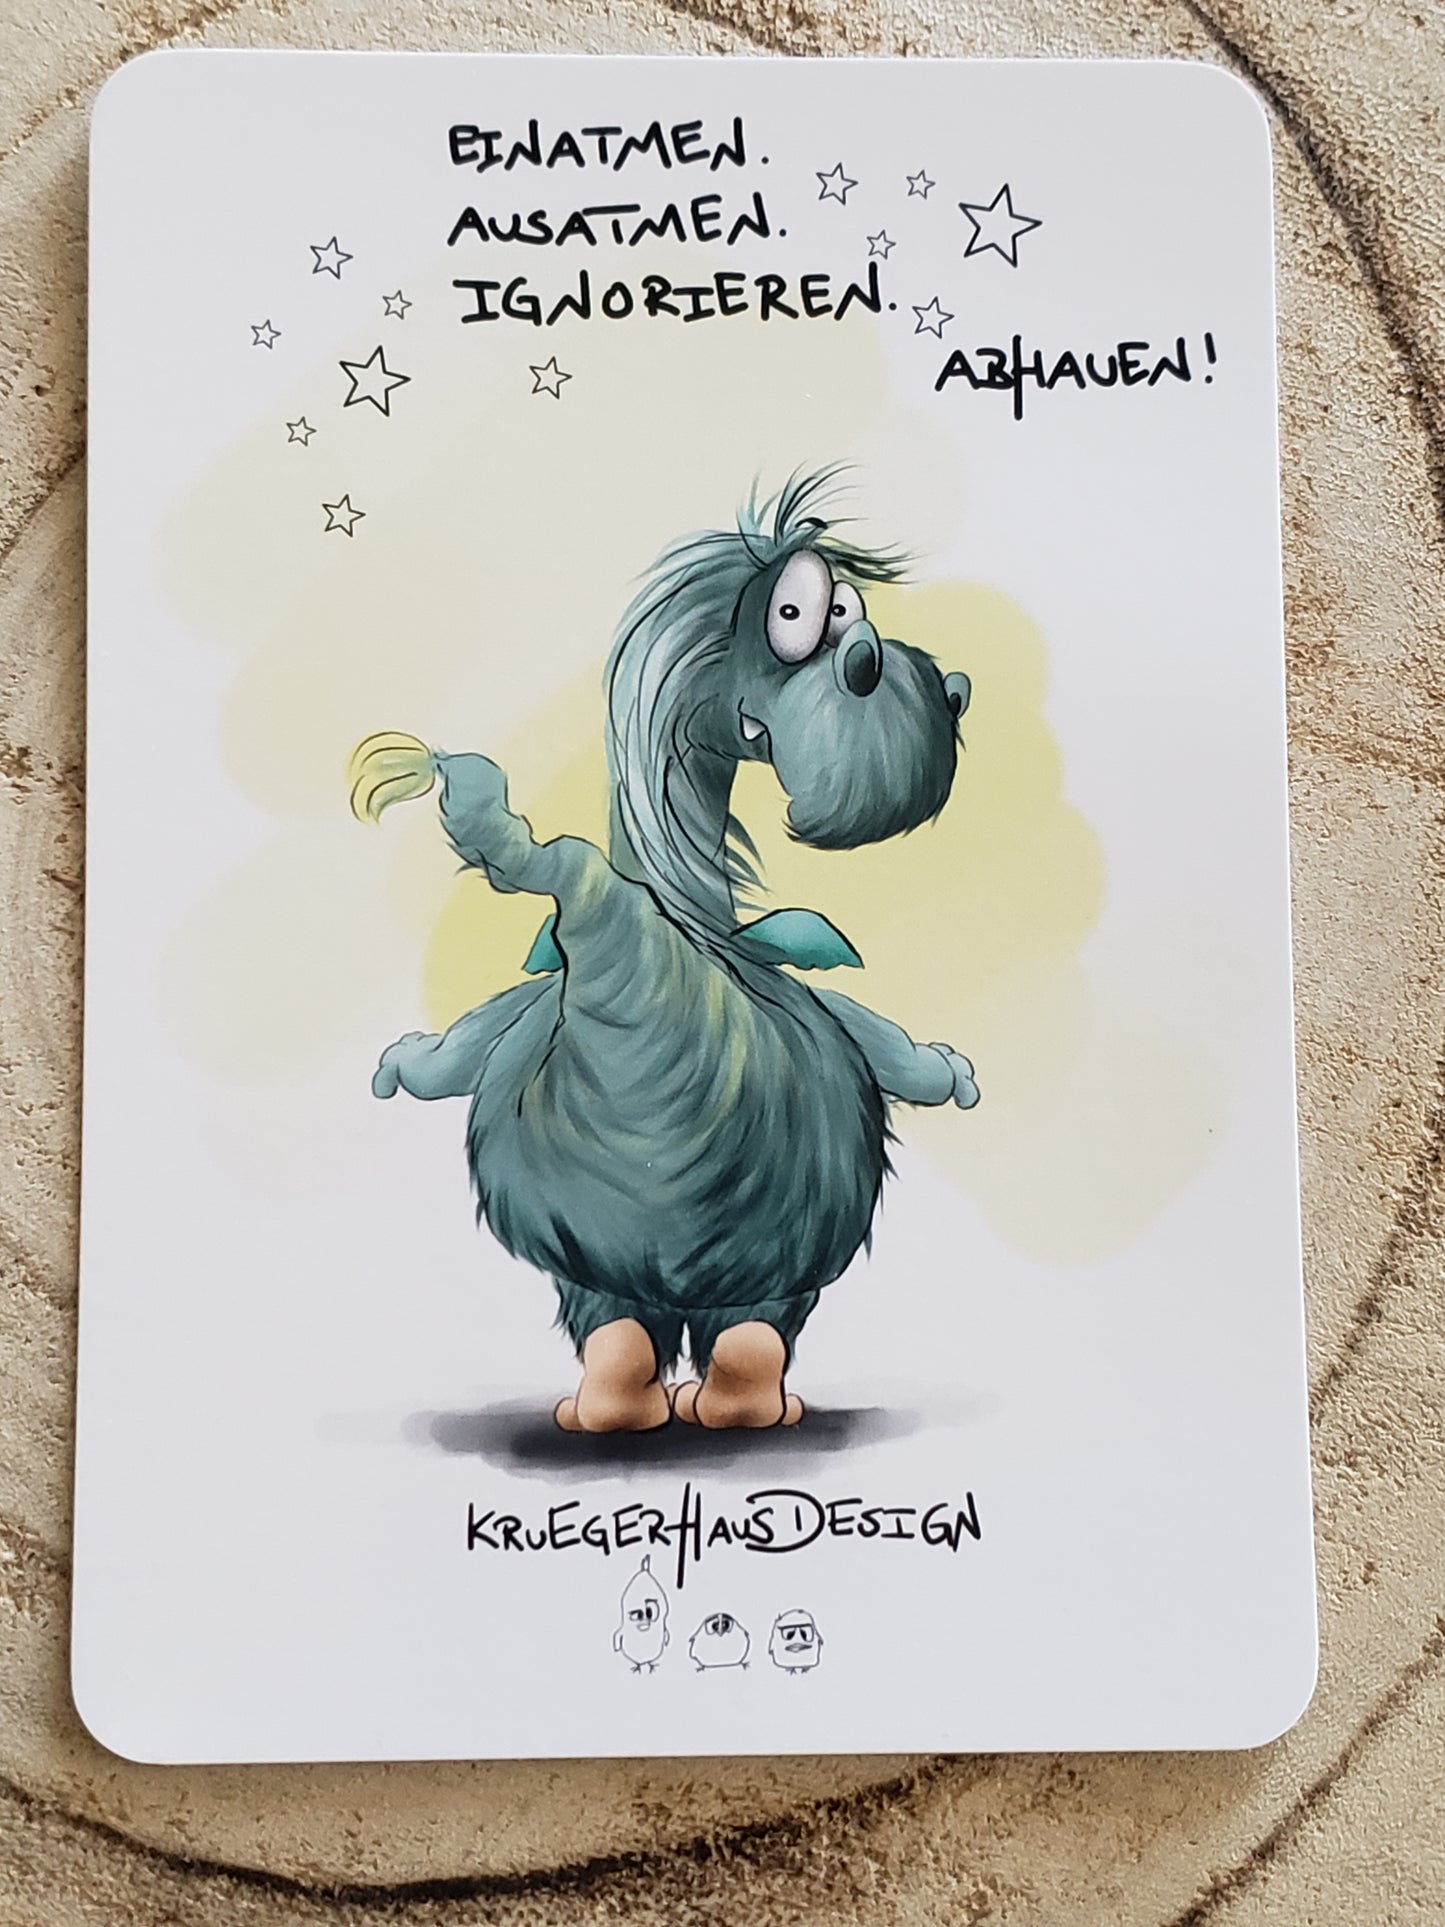 Postkarte Monster Kruegerhausdesign mit Spruch "Einatmen. Ausatmen.."